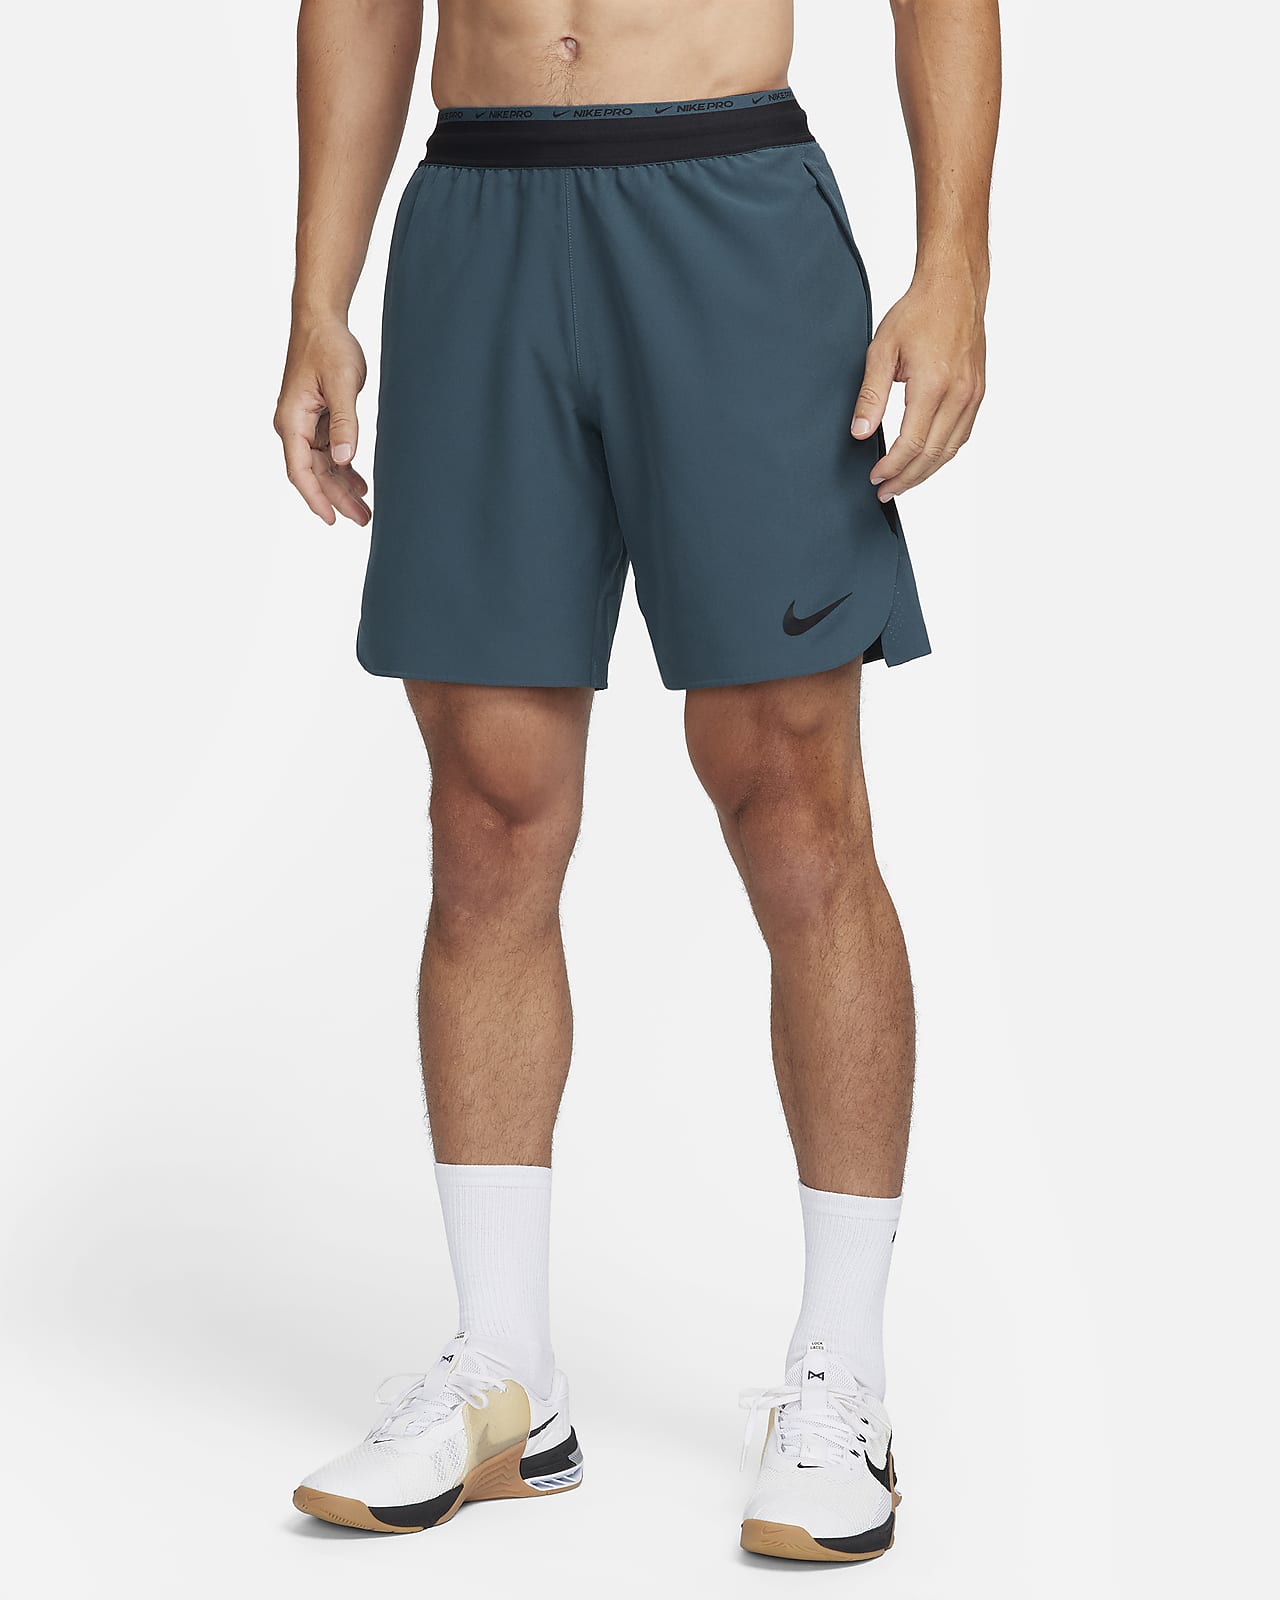 Shorts da training non foderati 20 cm Nike Dri-FIT Flex Rep Pro Collection – Uomo